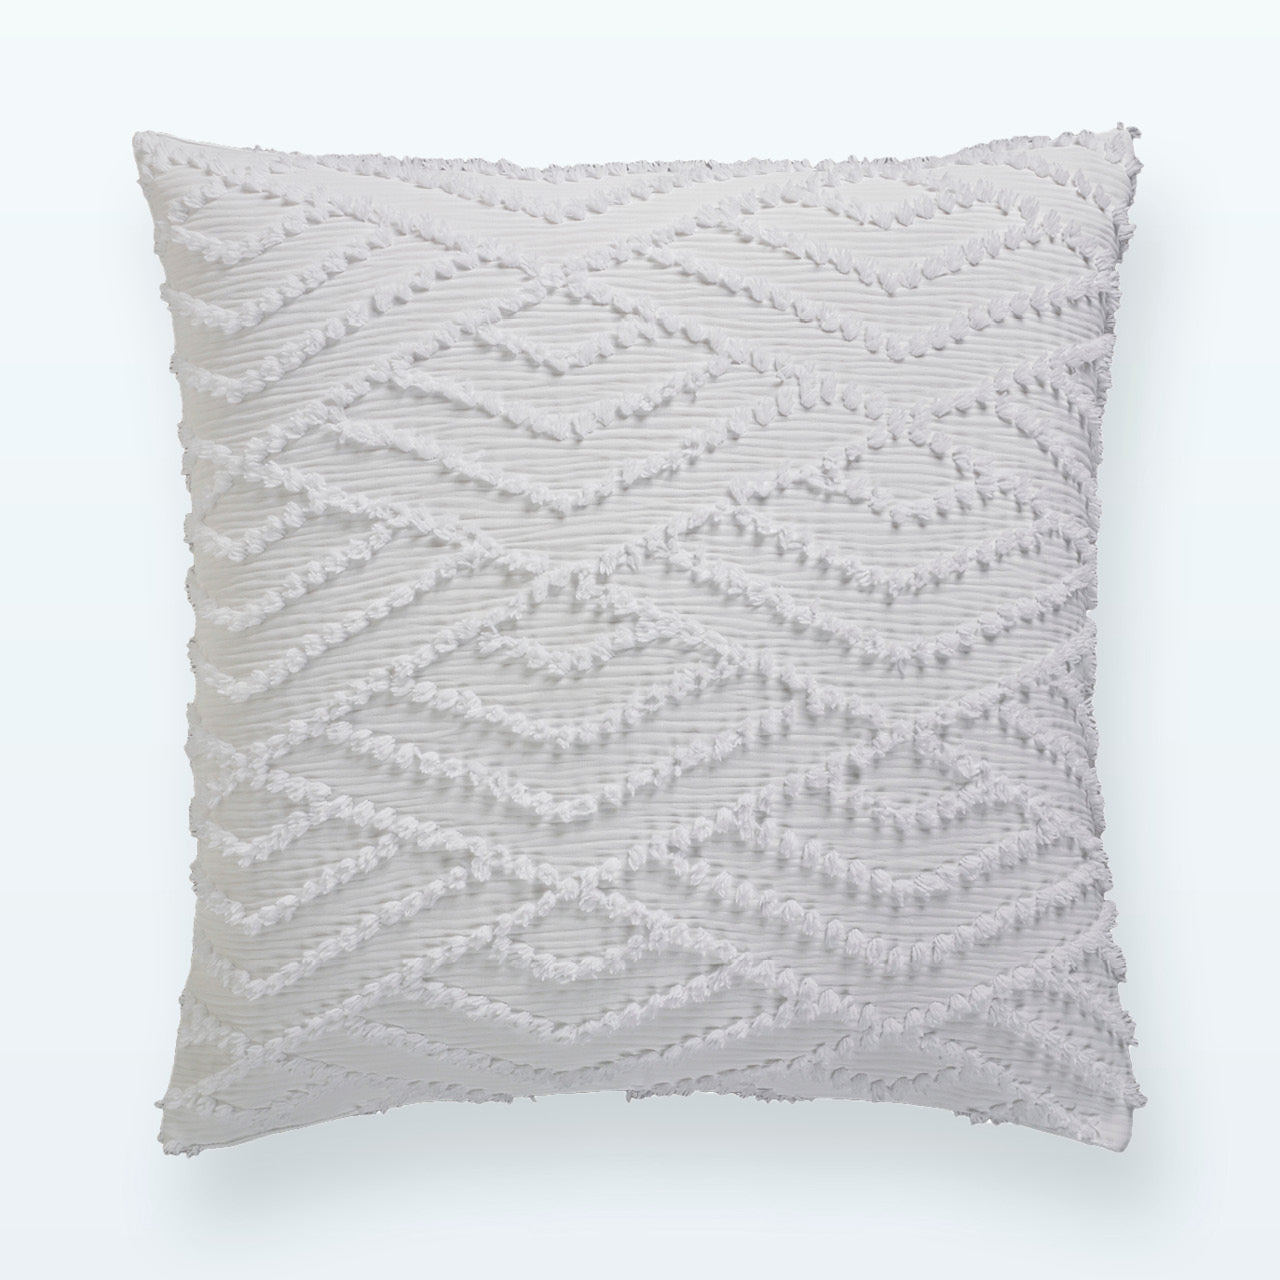 Tori European Pillowcase on a white background